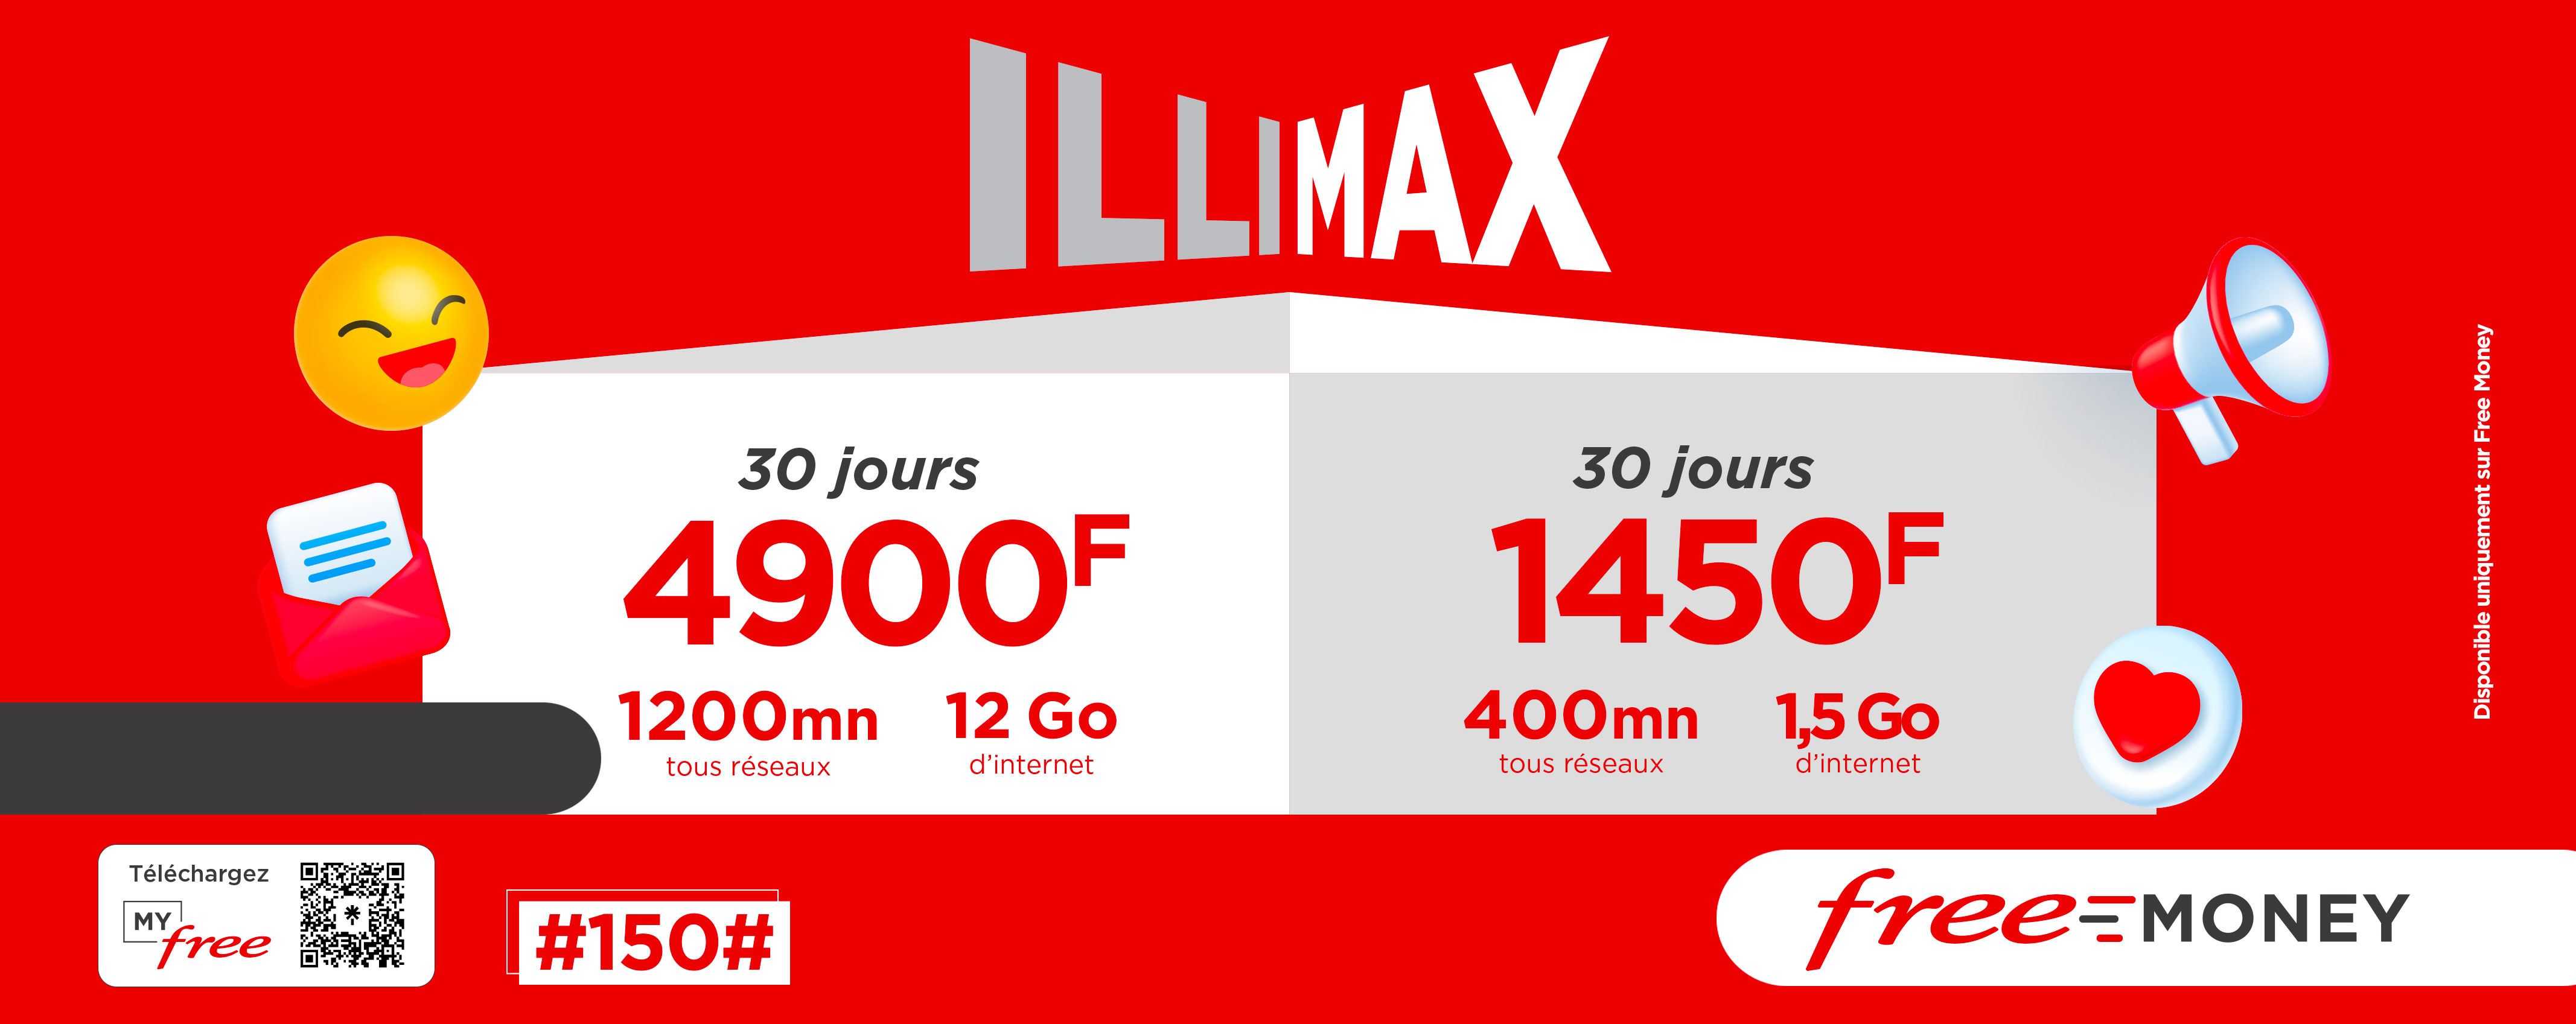 illimax 4900